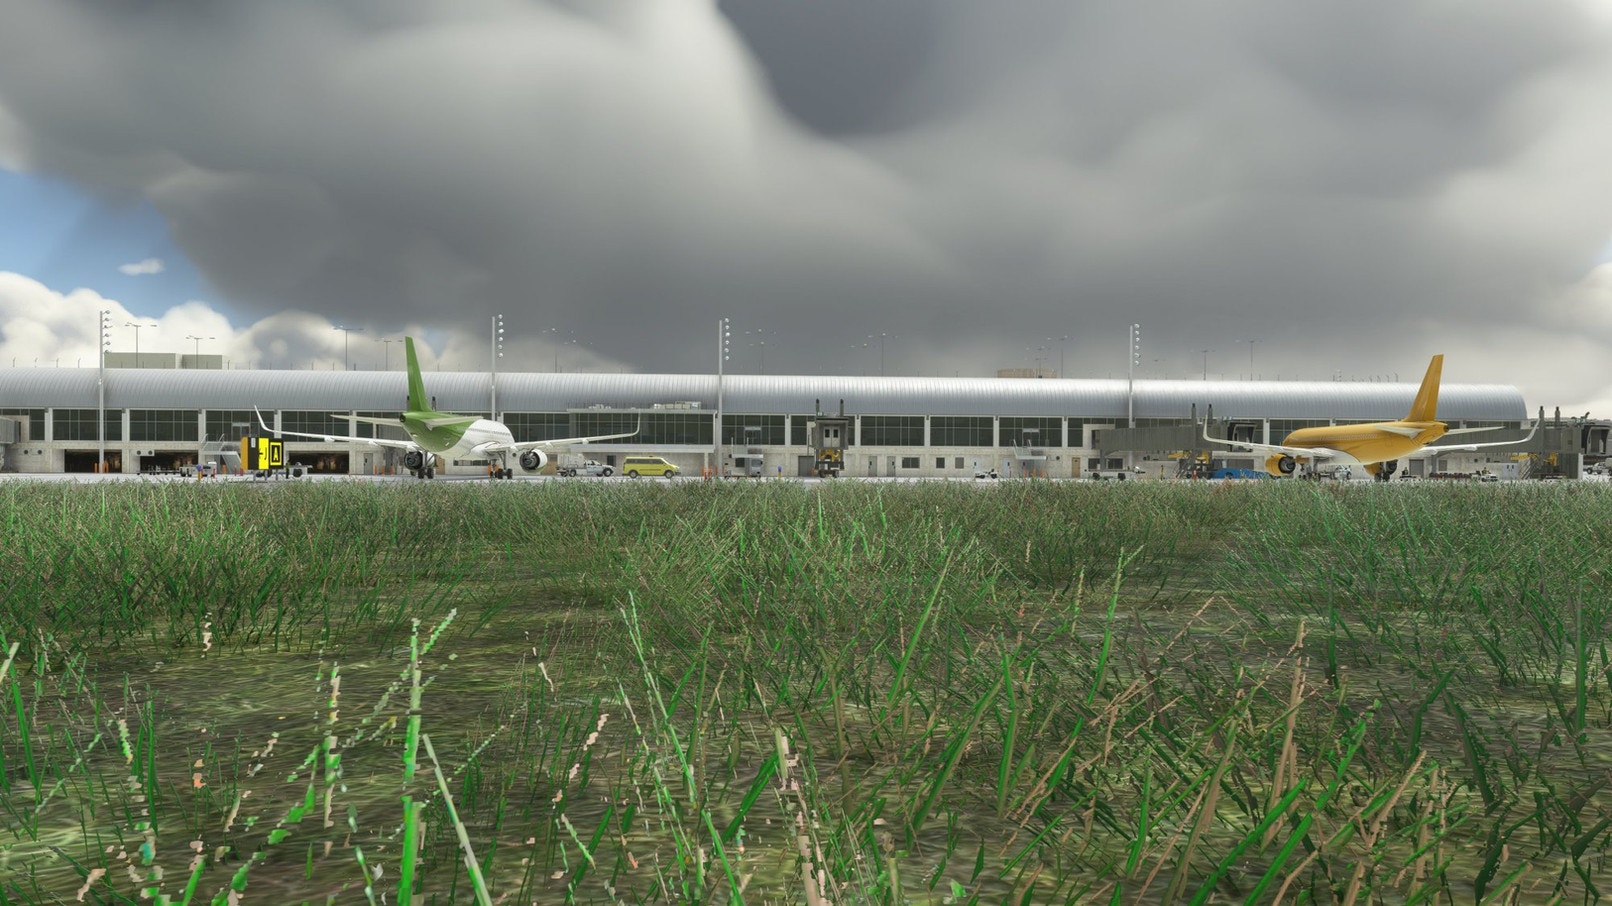 UK2000 Scenery Releases John Wayne Airport for MSFS